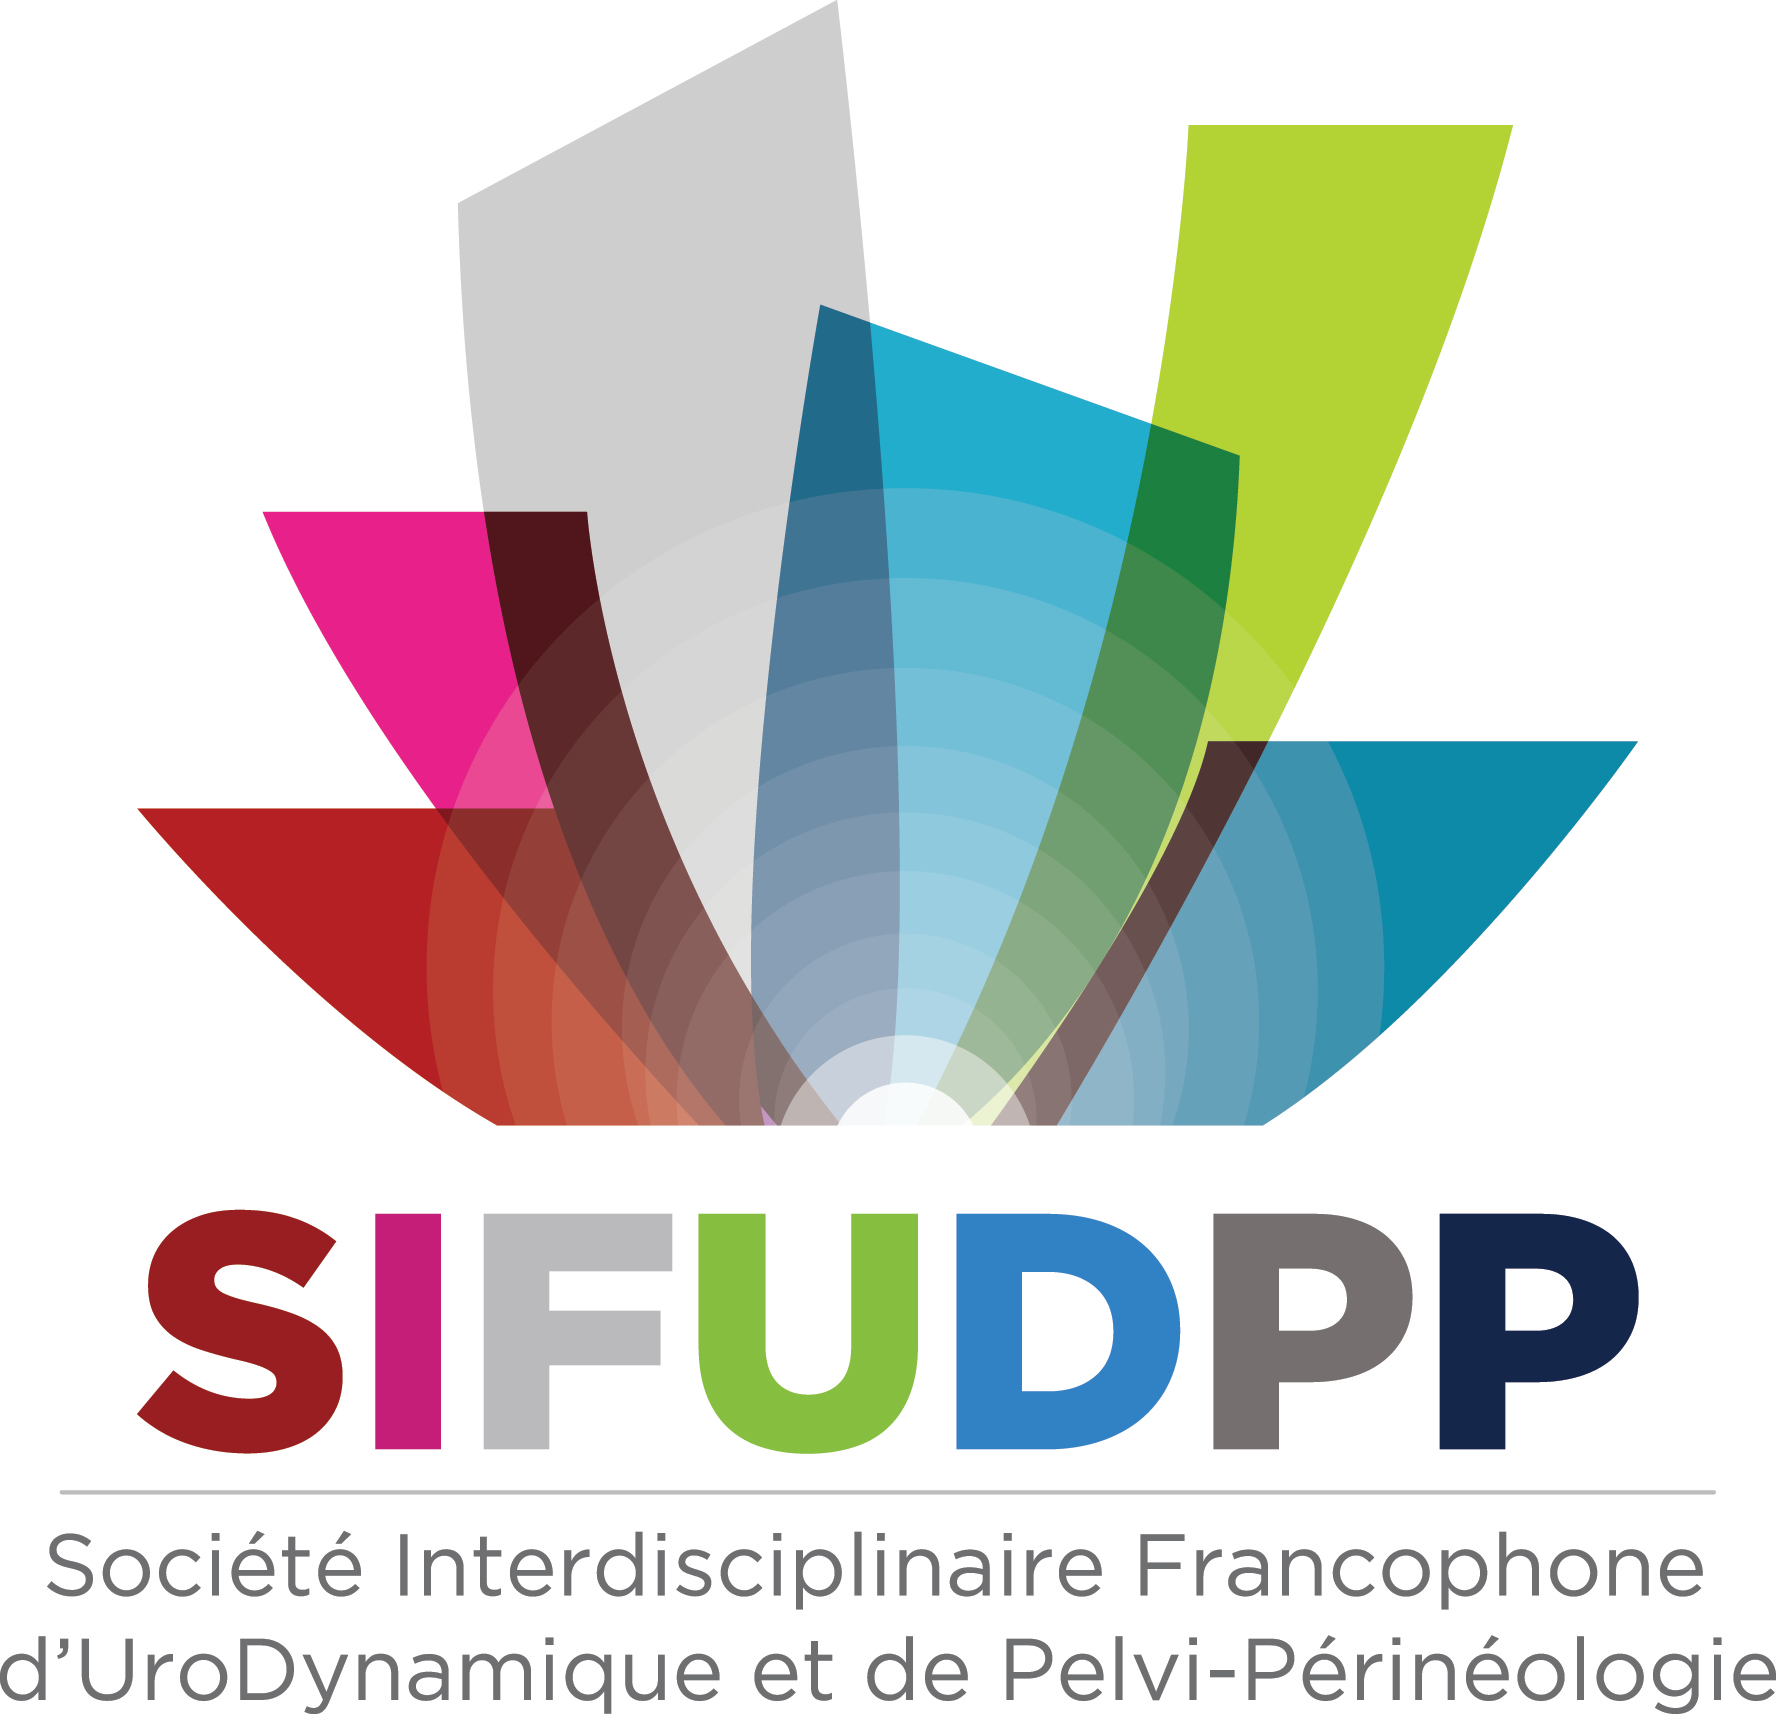 SIFUD-PP Paris 2016 : Vessie radique, anticholinergique, toxine botulique ou entérocystoplastie ?